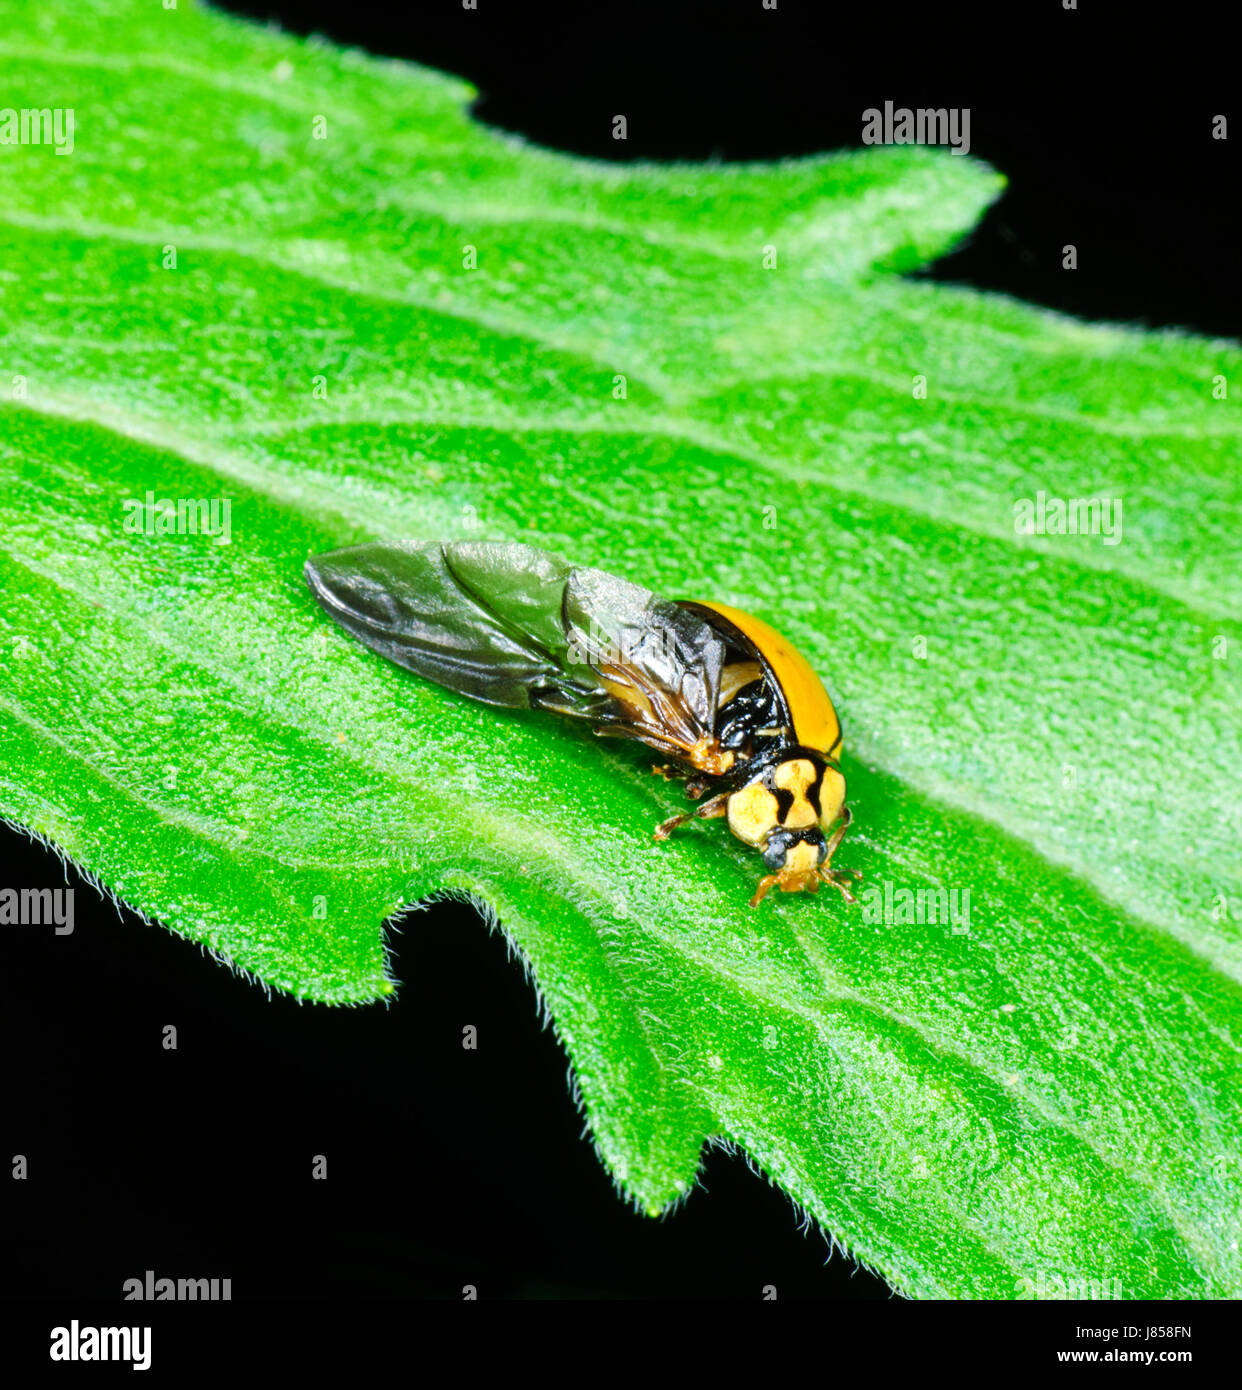 Un militaire blessé ou Ladybird Ladybug avec une aile manquante cas, New South Wales, NSW, Australie Banque D'Images